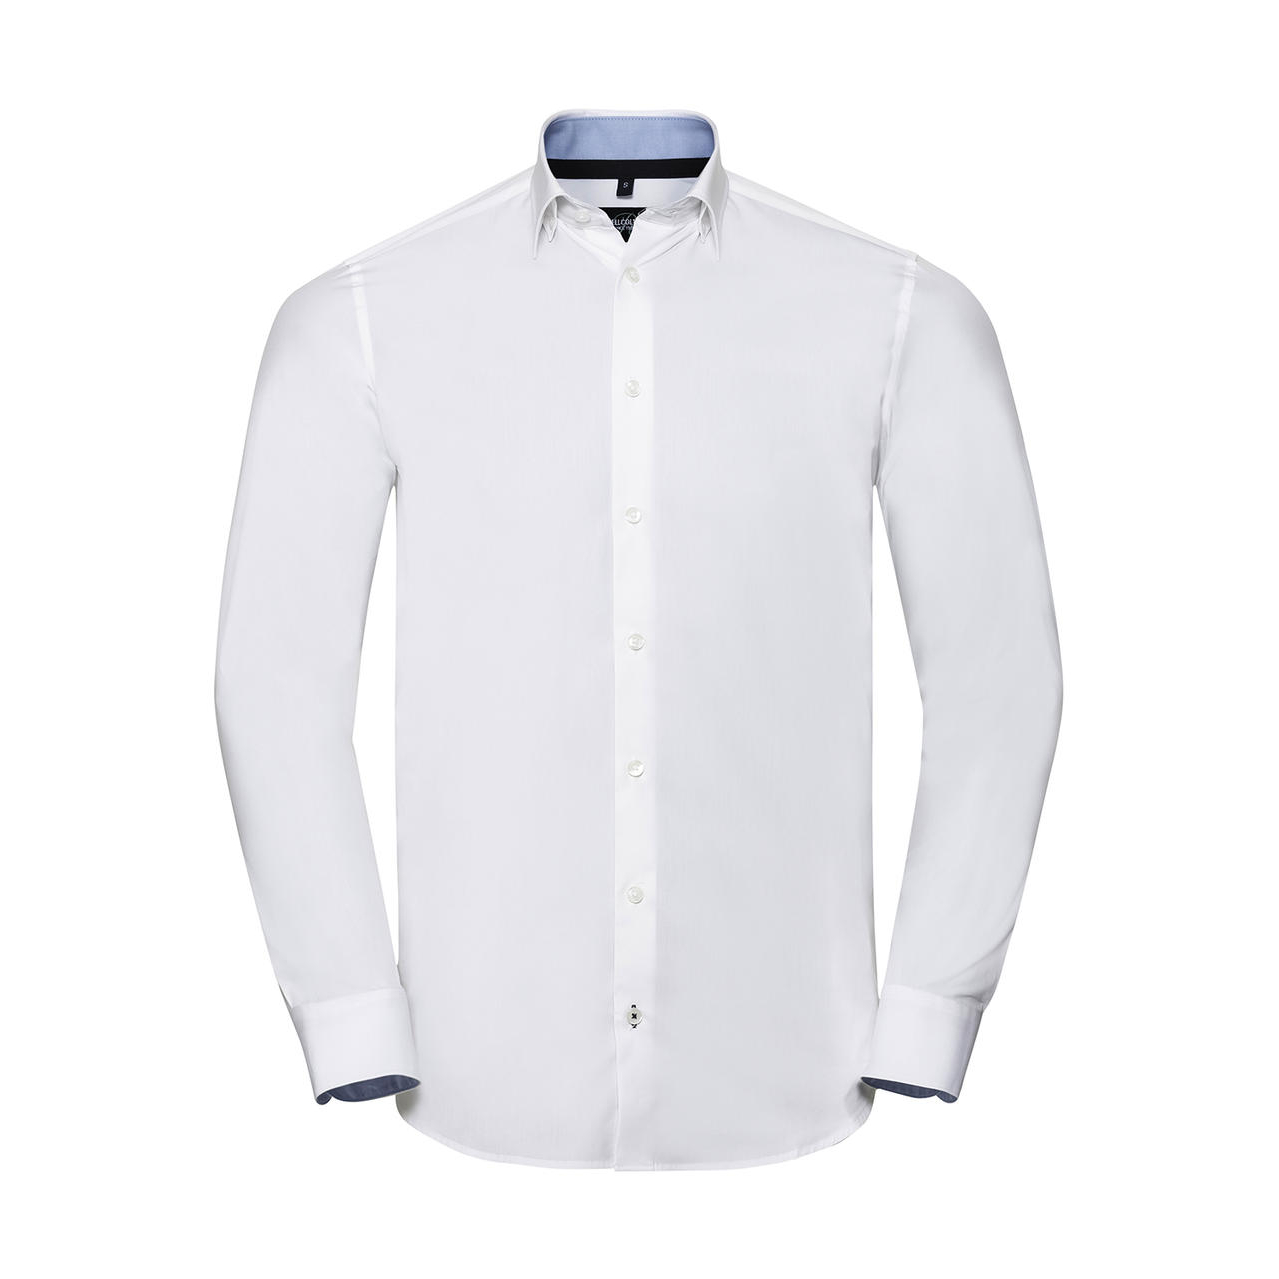 Košile pánská Rusell Collection Tailored Contrast Ultimate Stretch - bílá, 4XL